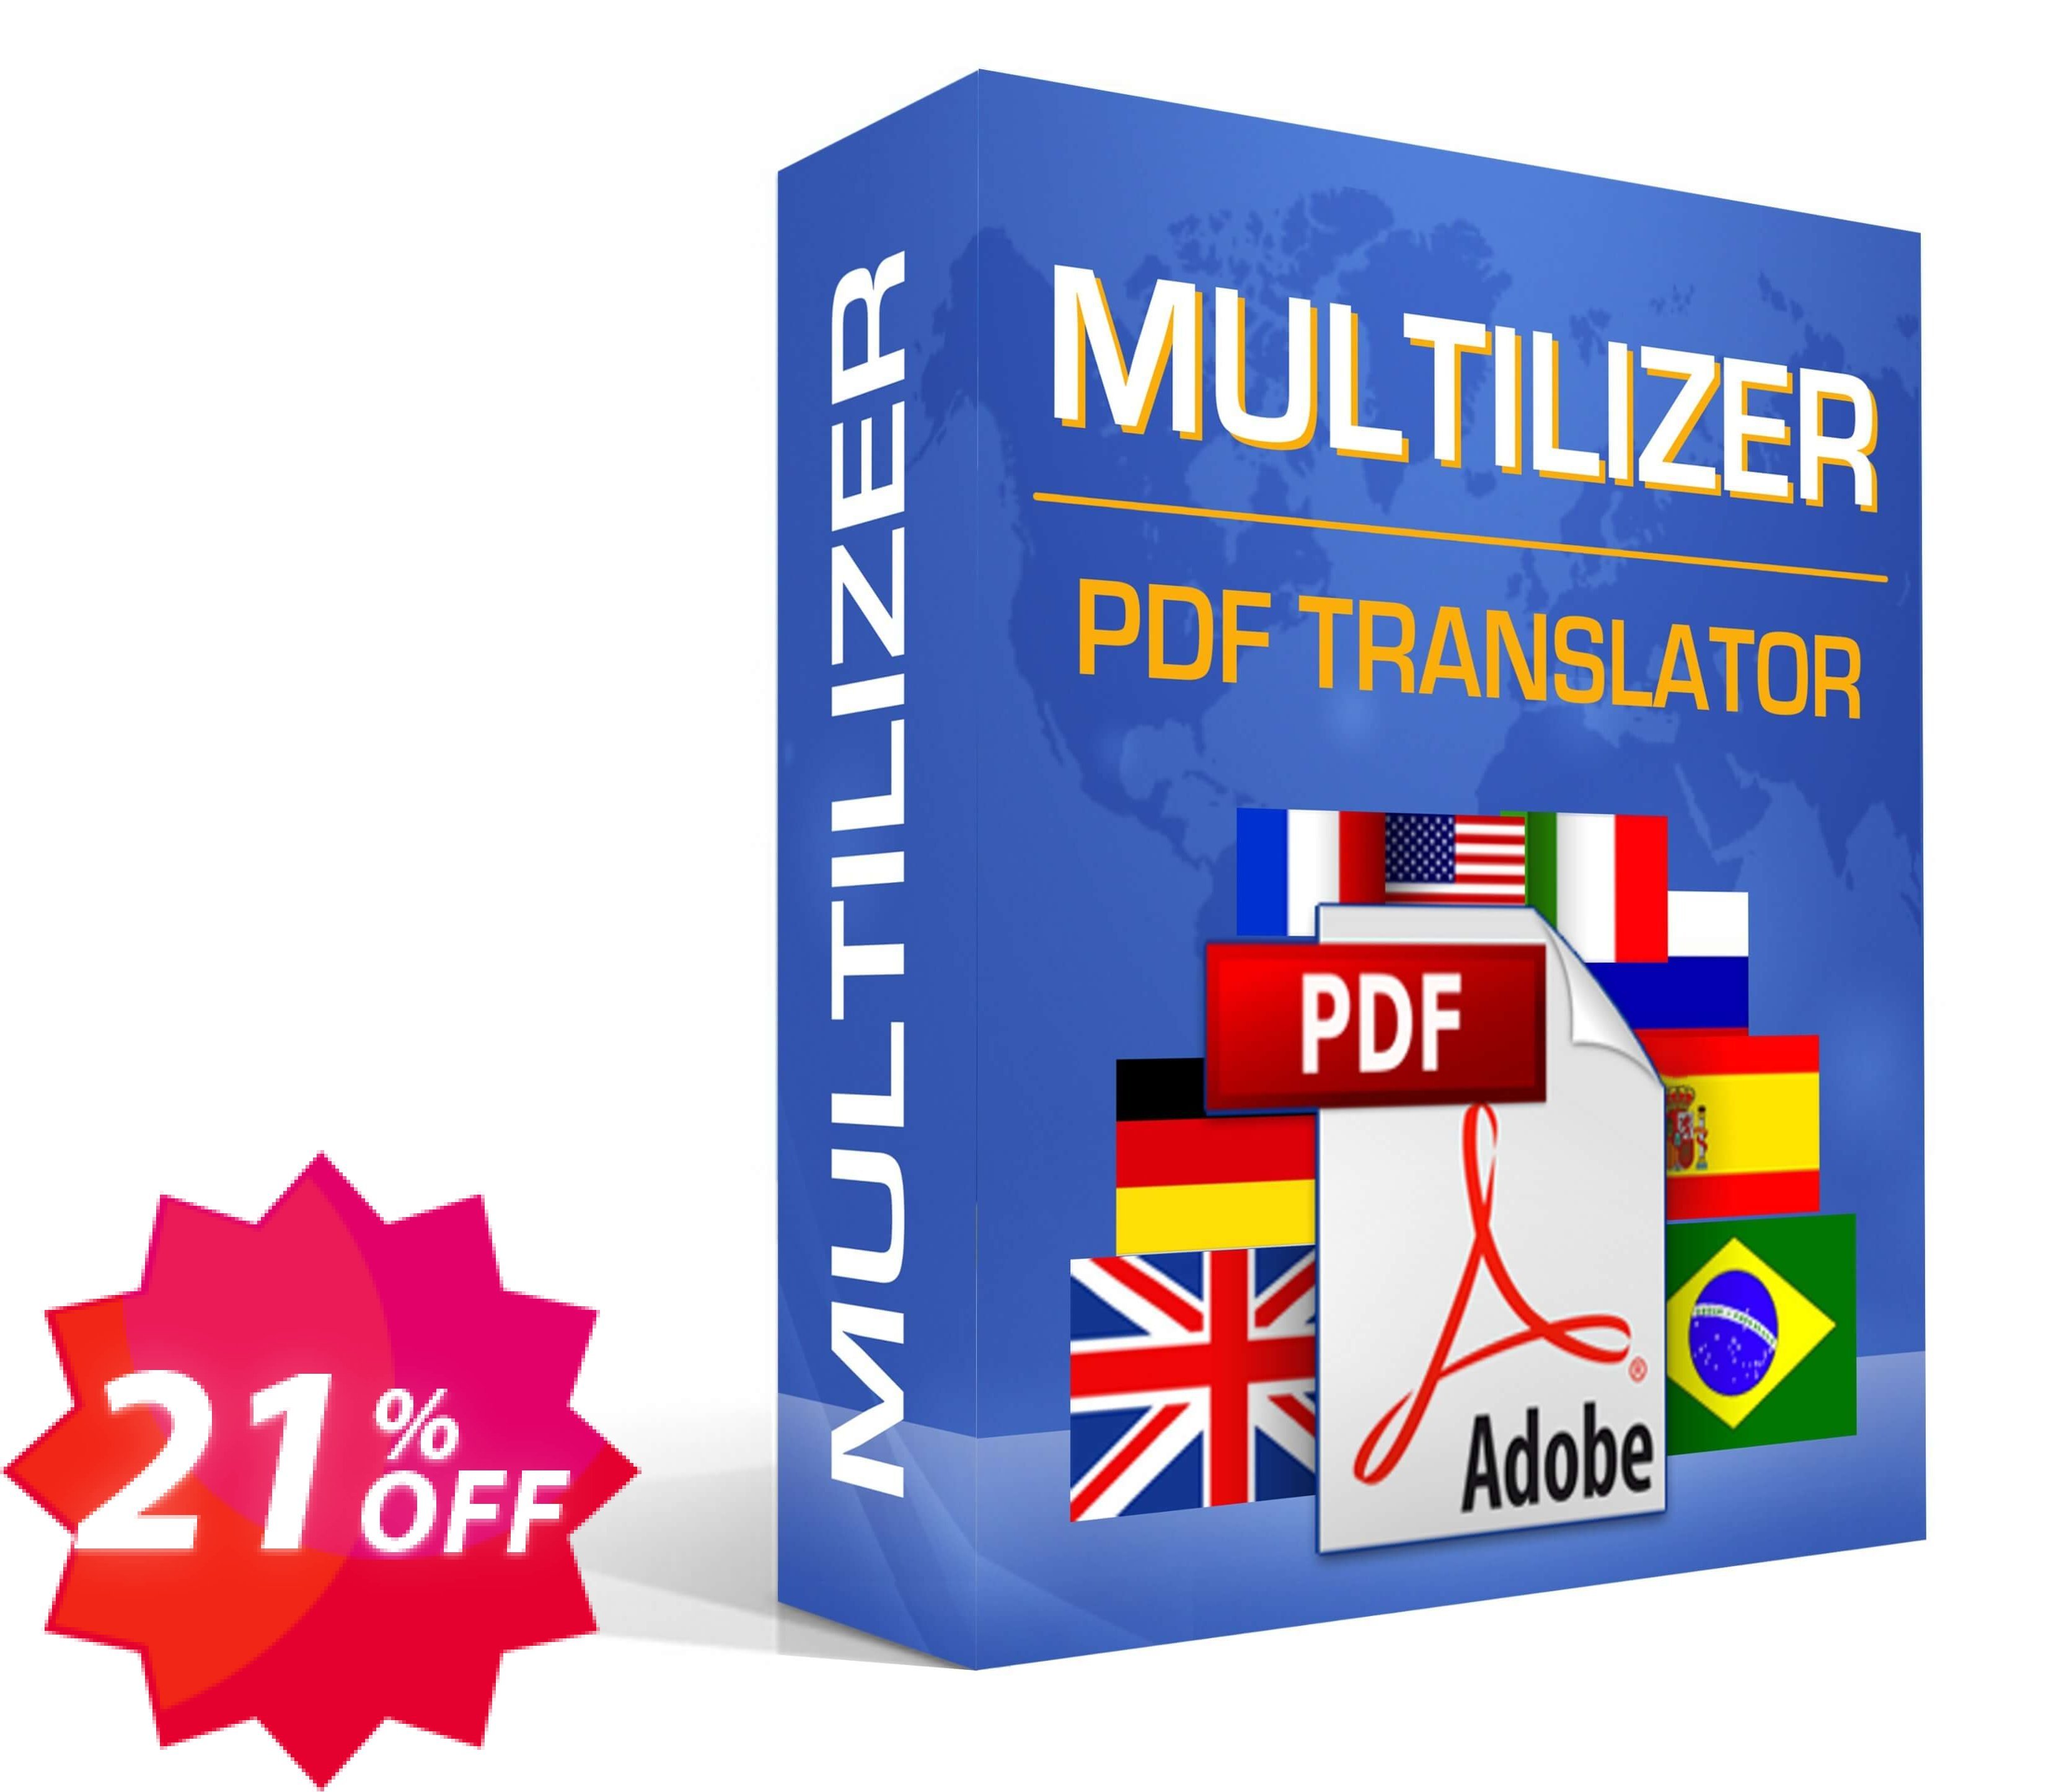 Penerjemah PDF Standar Multilizer Coupon code 21% discount 